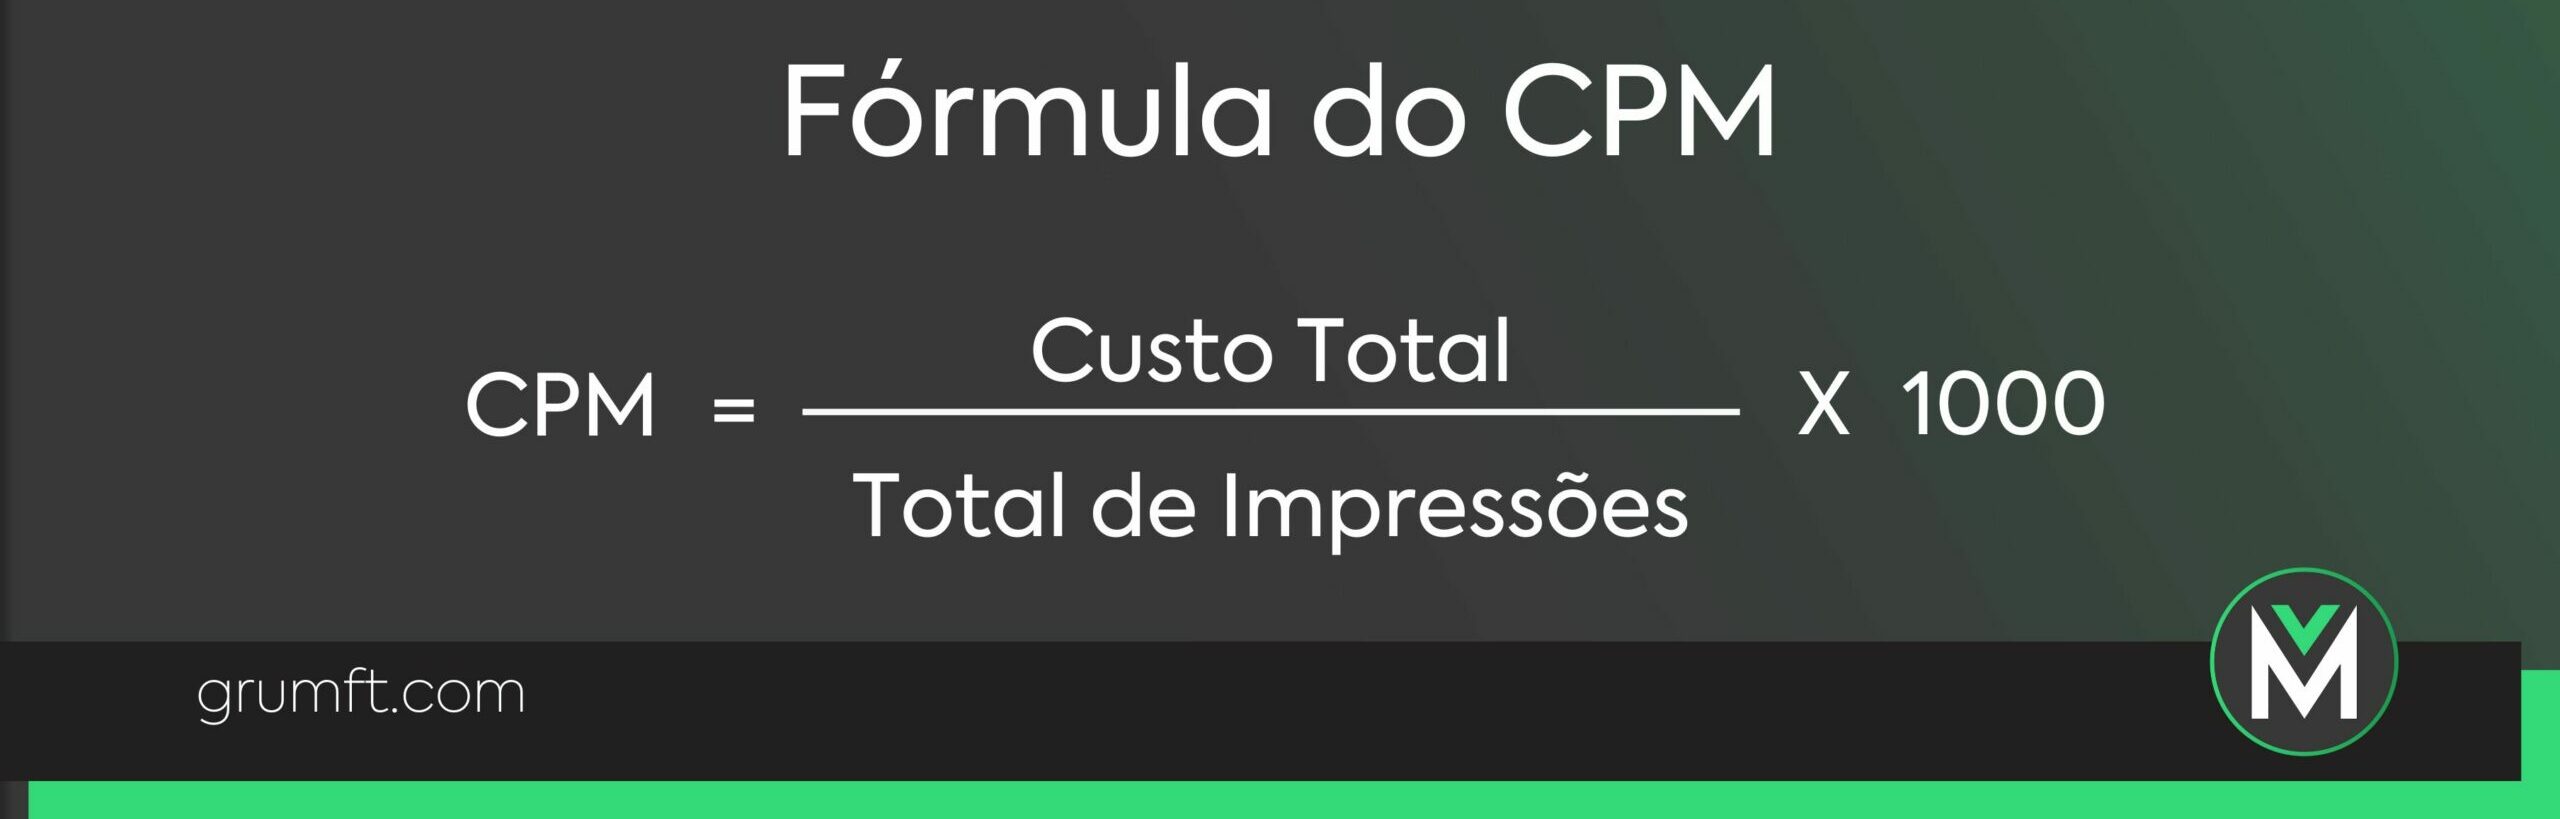 Fórmula do CPM